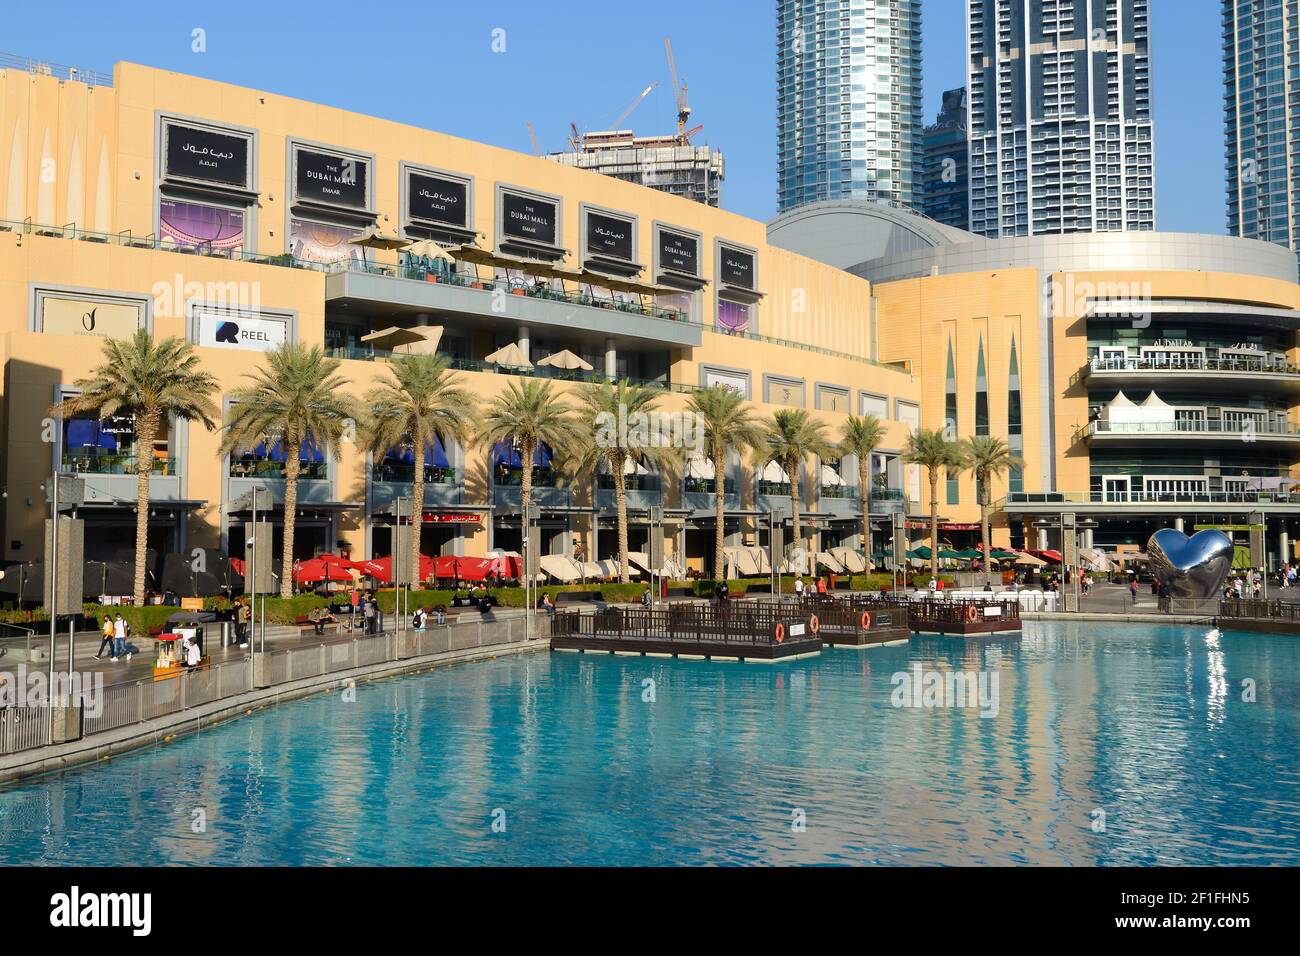 Die Uferpromenade der Dubai Mall befindet sich in Dubai, Vereinigte Arabische Emirate. Außenansicht des Emaar-Grundstücks. Stockfoto